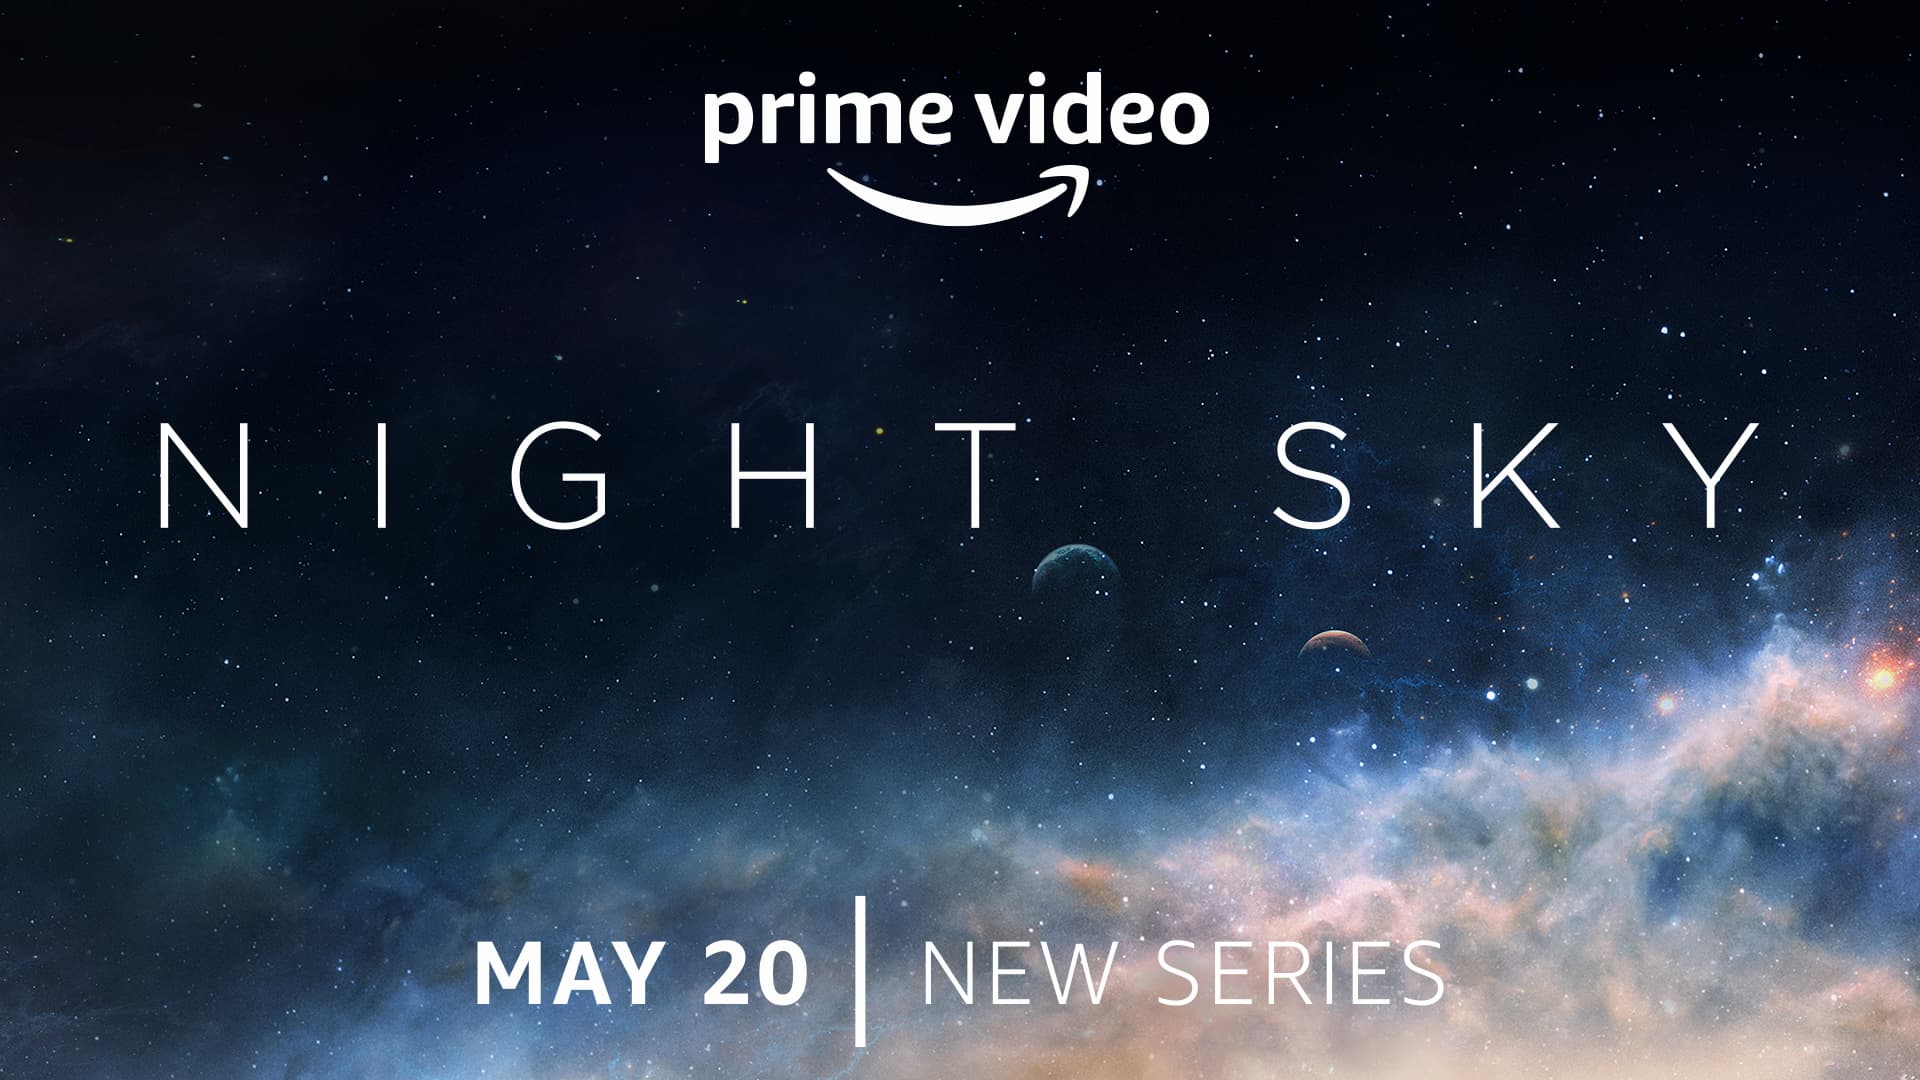 Prime Video anuncia el estreno de ‘Night Sky’, su nueva serie sobrenatural